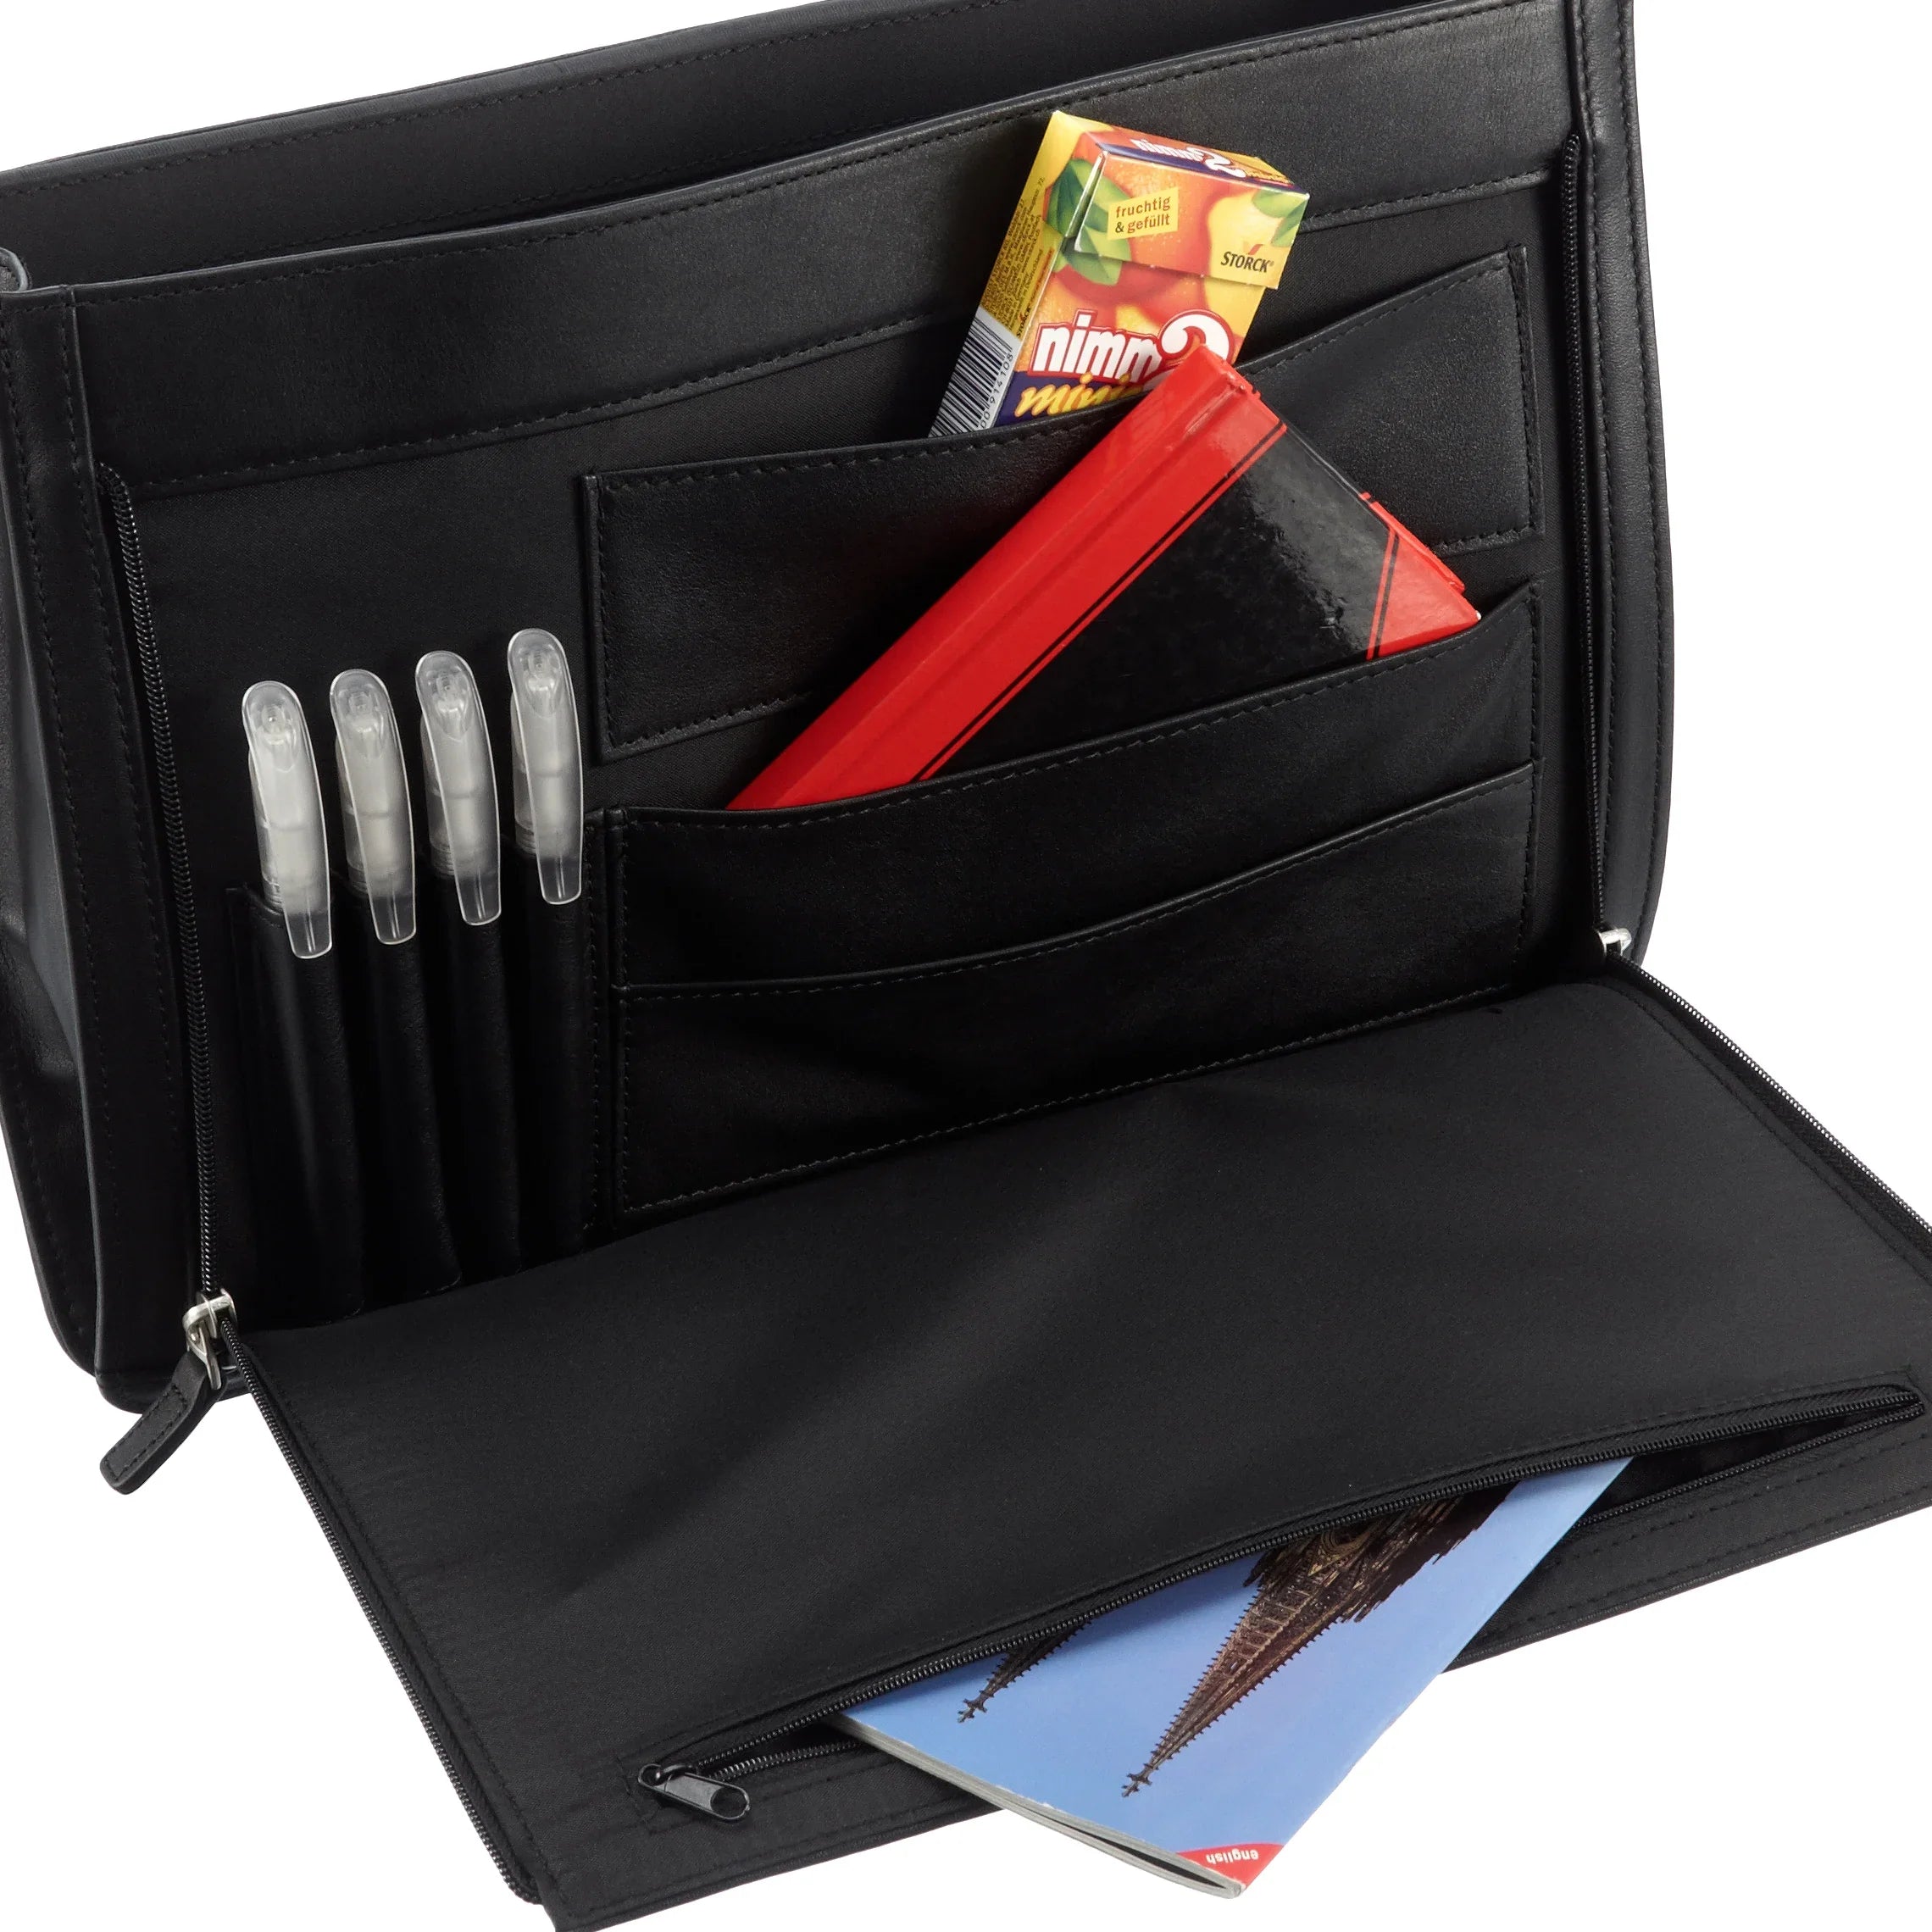 Dermata Business briefcase 34 cm - black